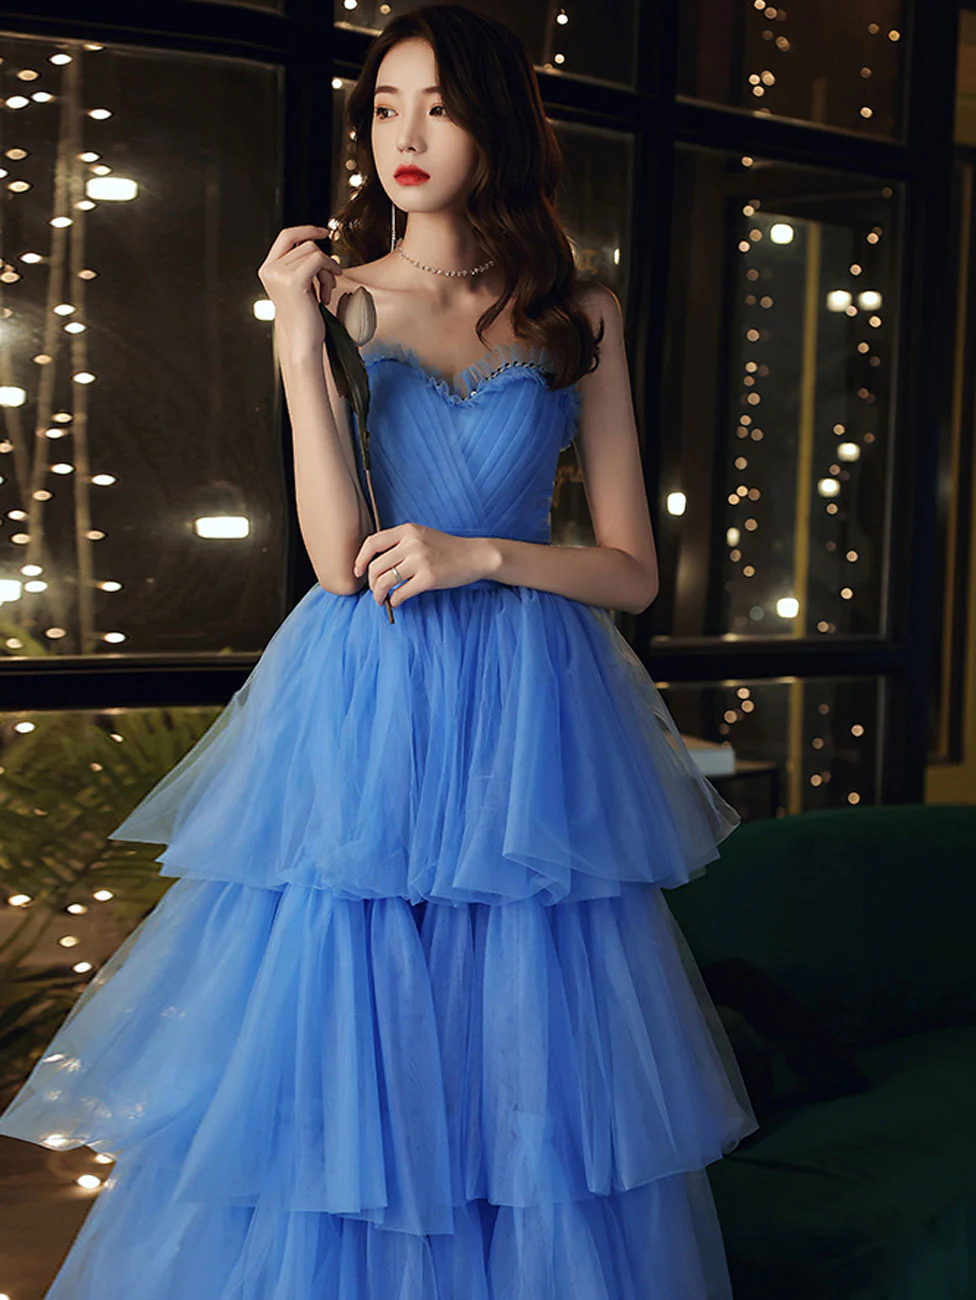 Blue Sweetheart Strapless Formal Graduation Dress Sweet 16 Dress,DP1626